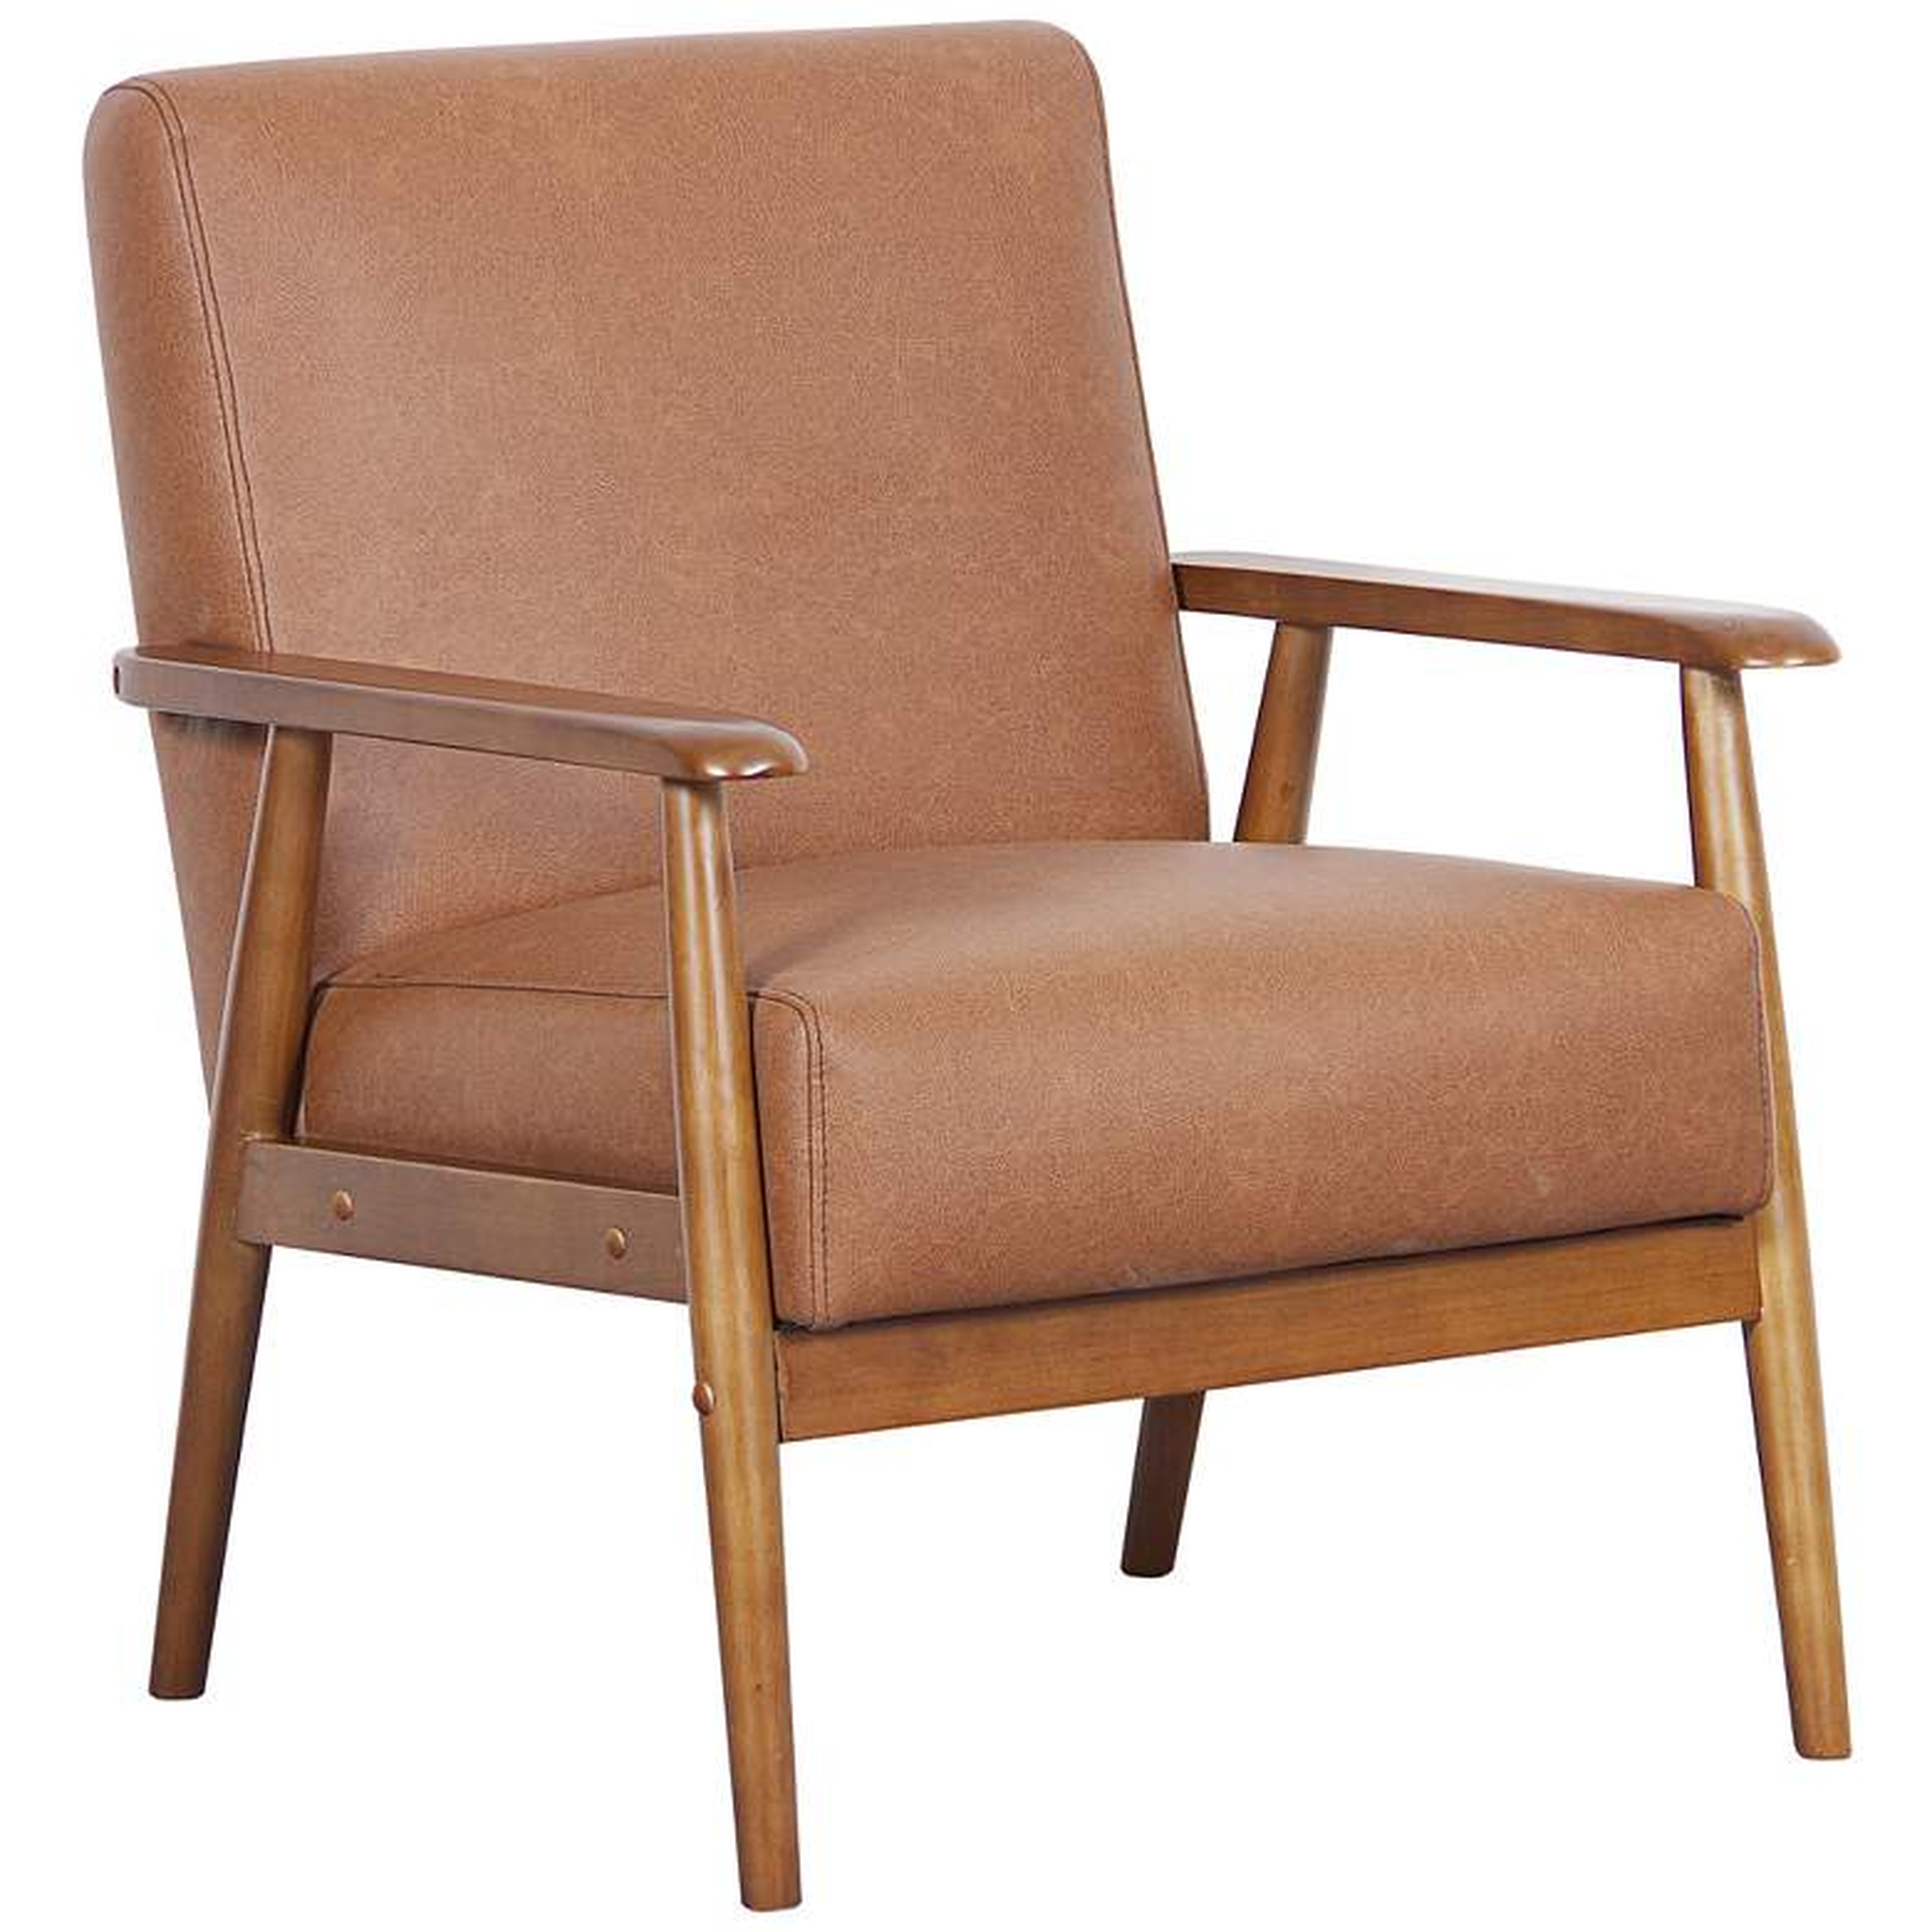 Rikker Lummus Cognac Faux Leather Accent Chair - Style # 35V24 - Lamps Plus